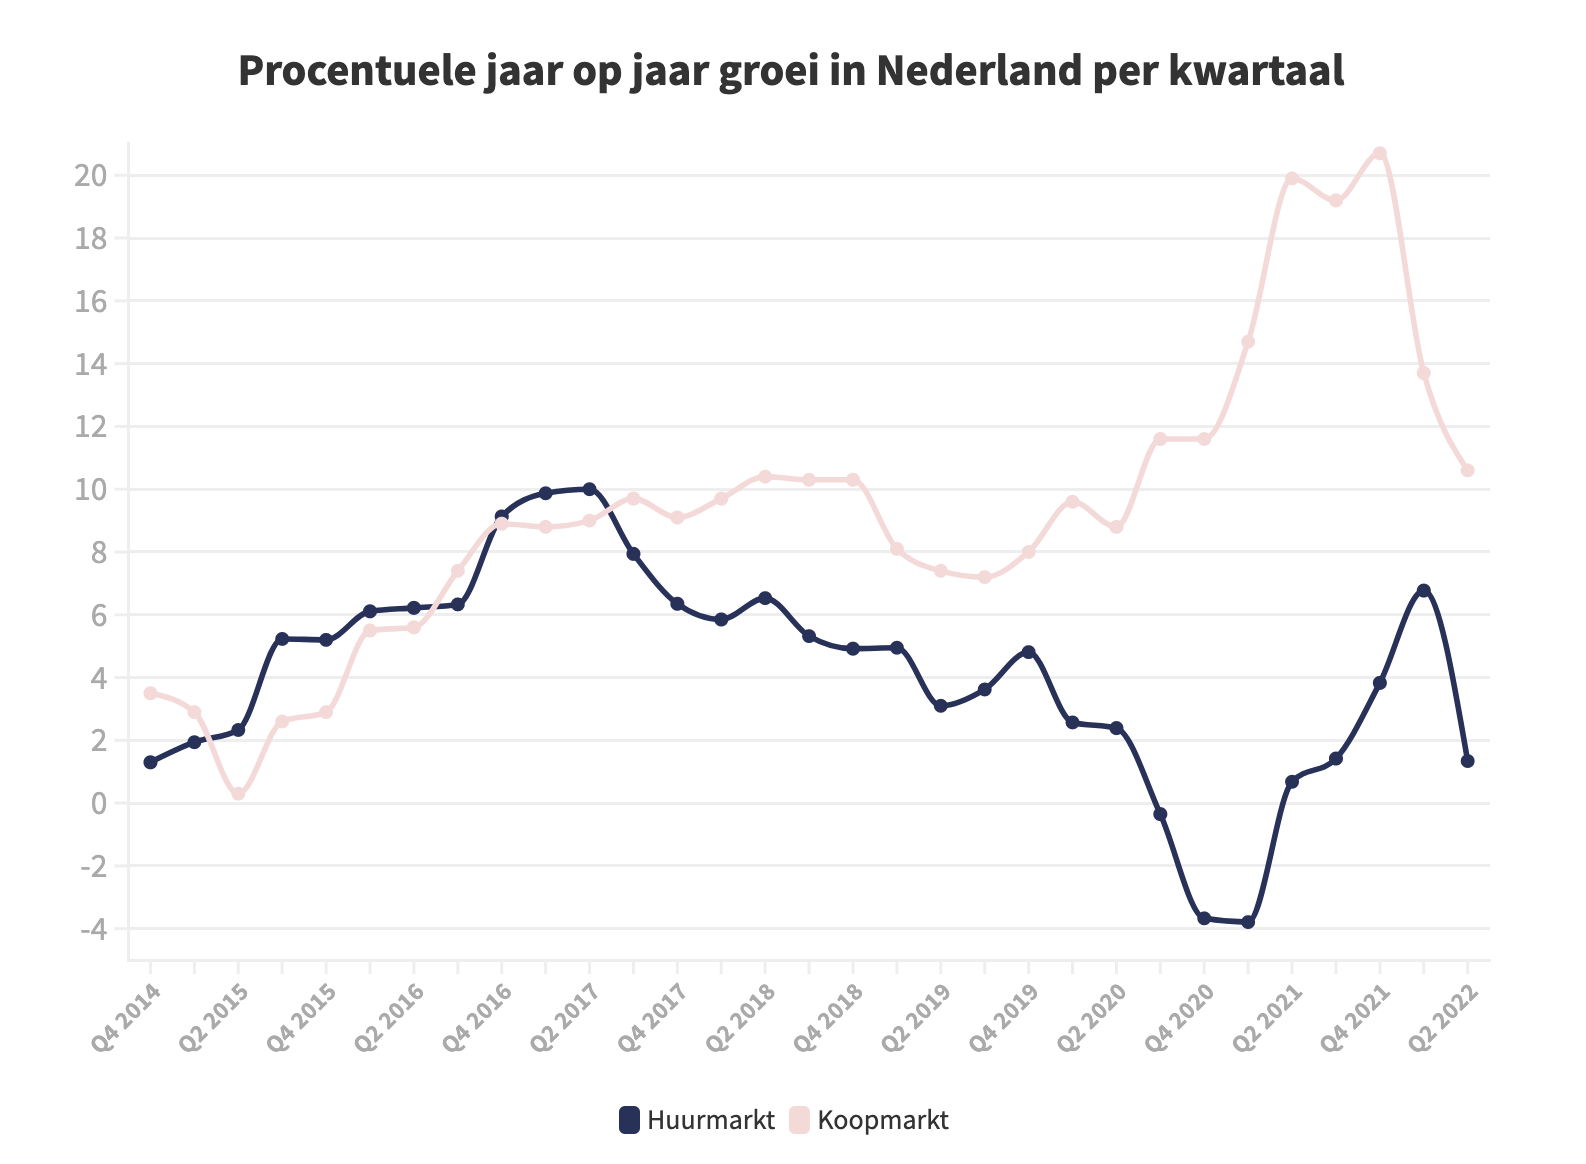 Procentuele groei jaar-op-jaar in Nederland per kwartaal, bron: Pararius